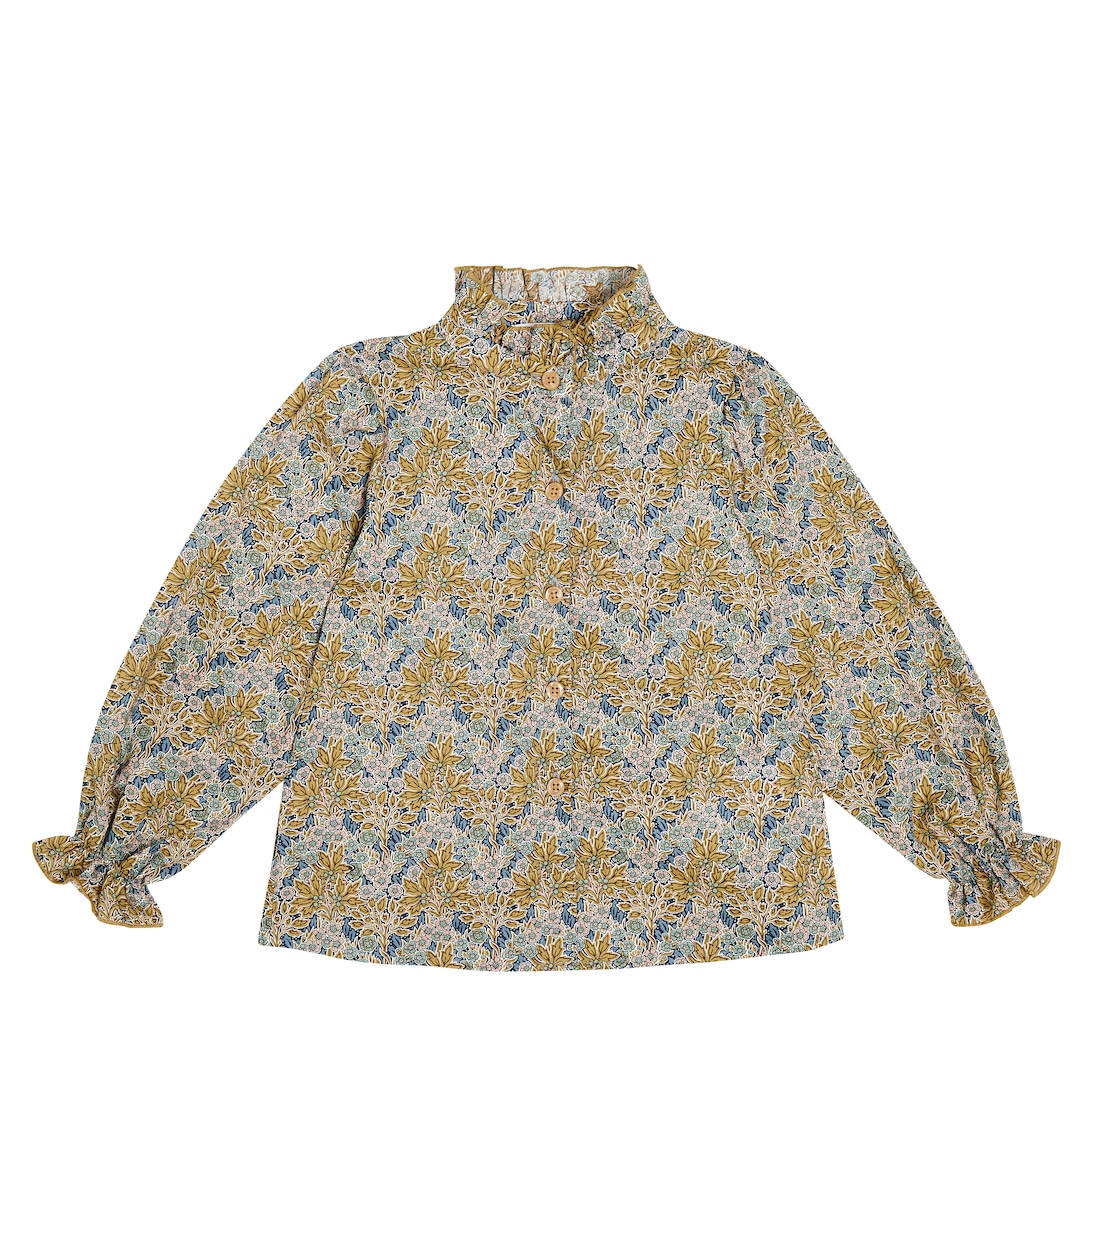 Хлопковая блузка с цветочным принтом Paade Mode, разноцветный блузка с цветочным принтом xs разноцветный